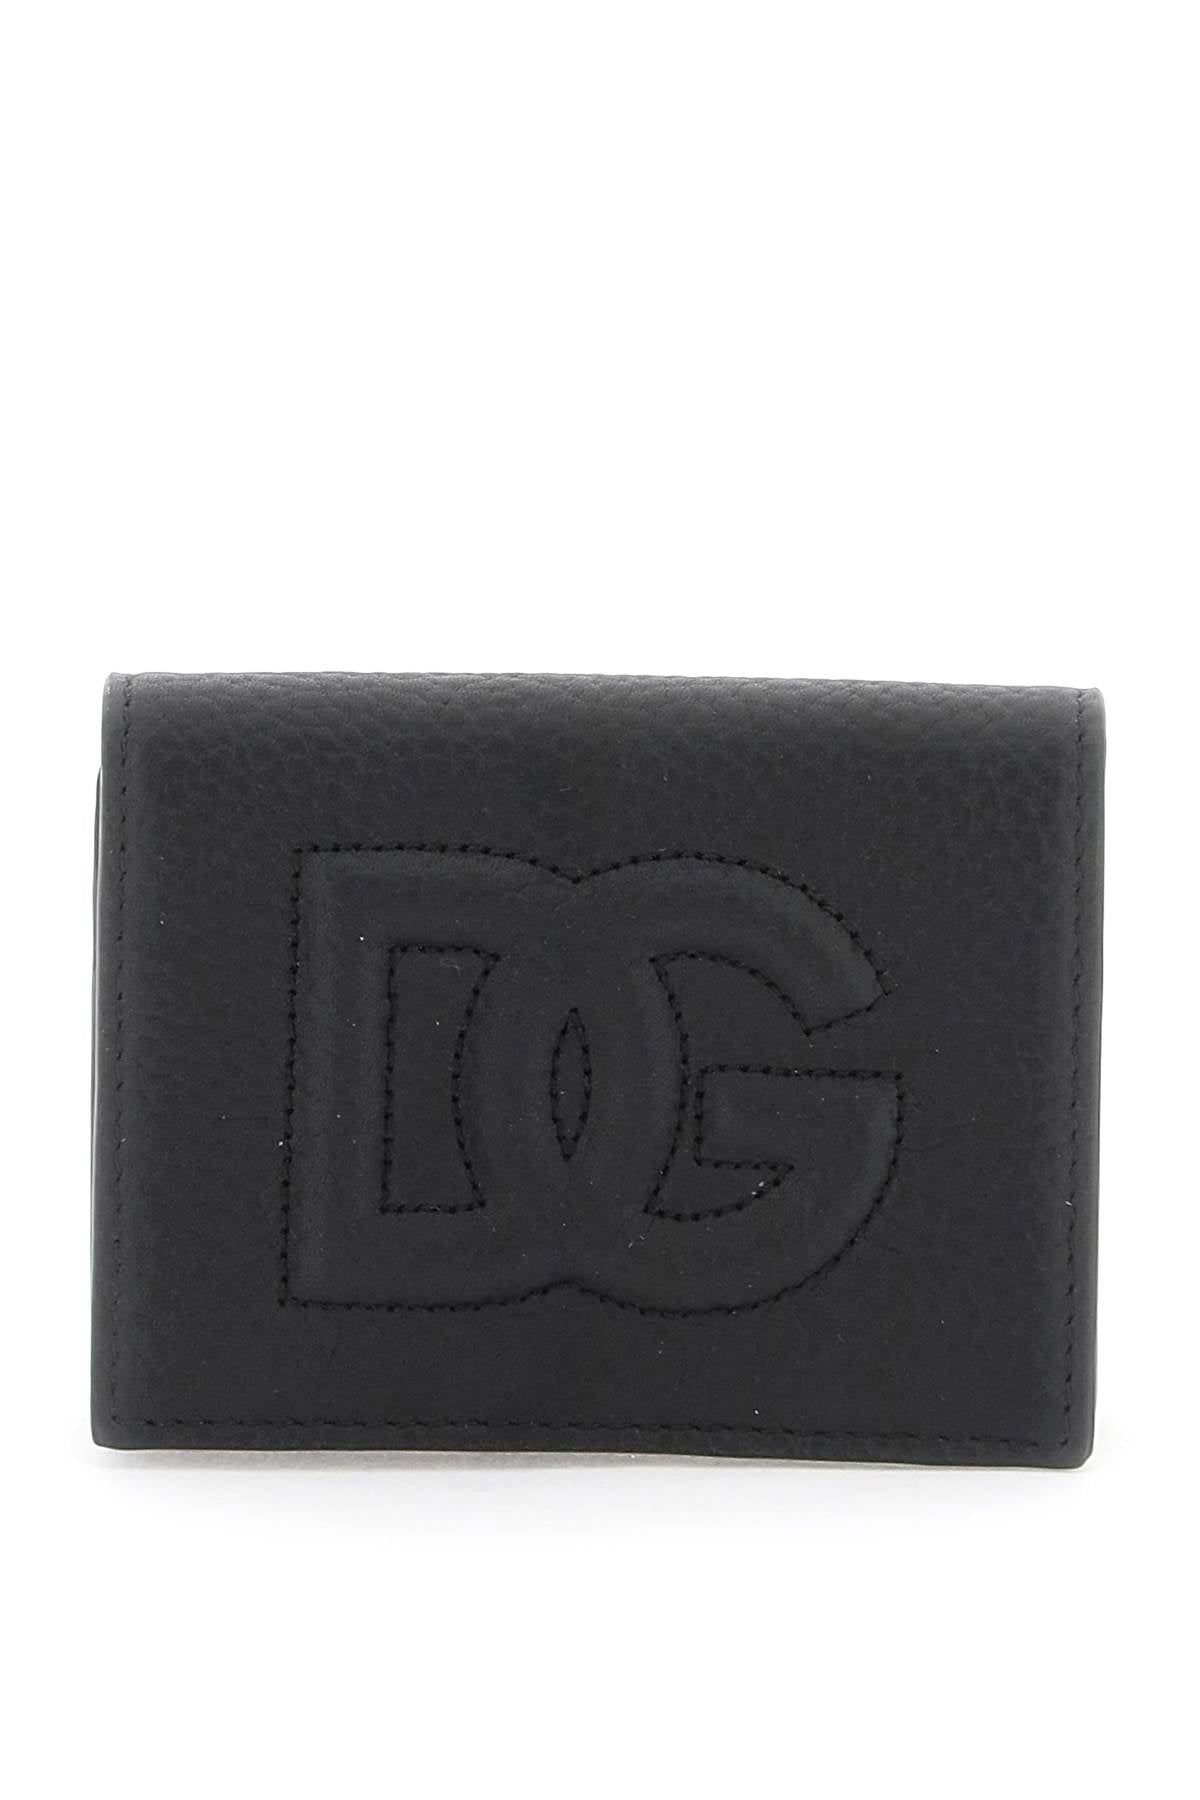 Dolce & gabbana dg logo card holder-0